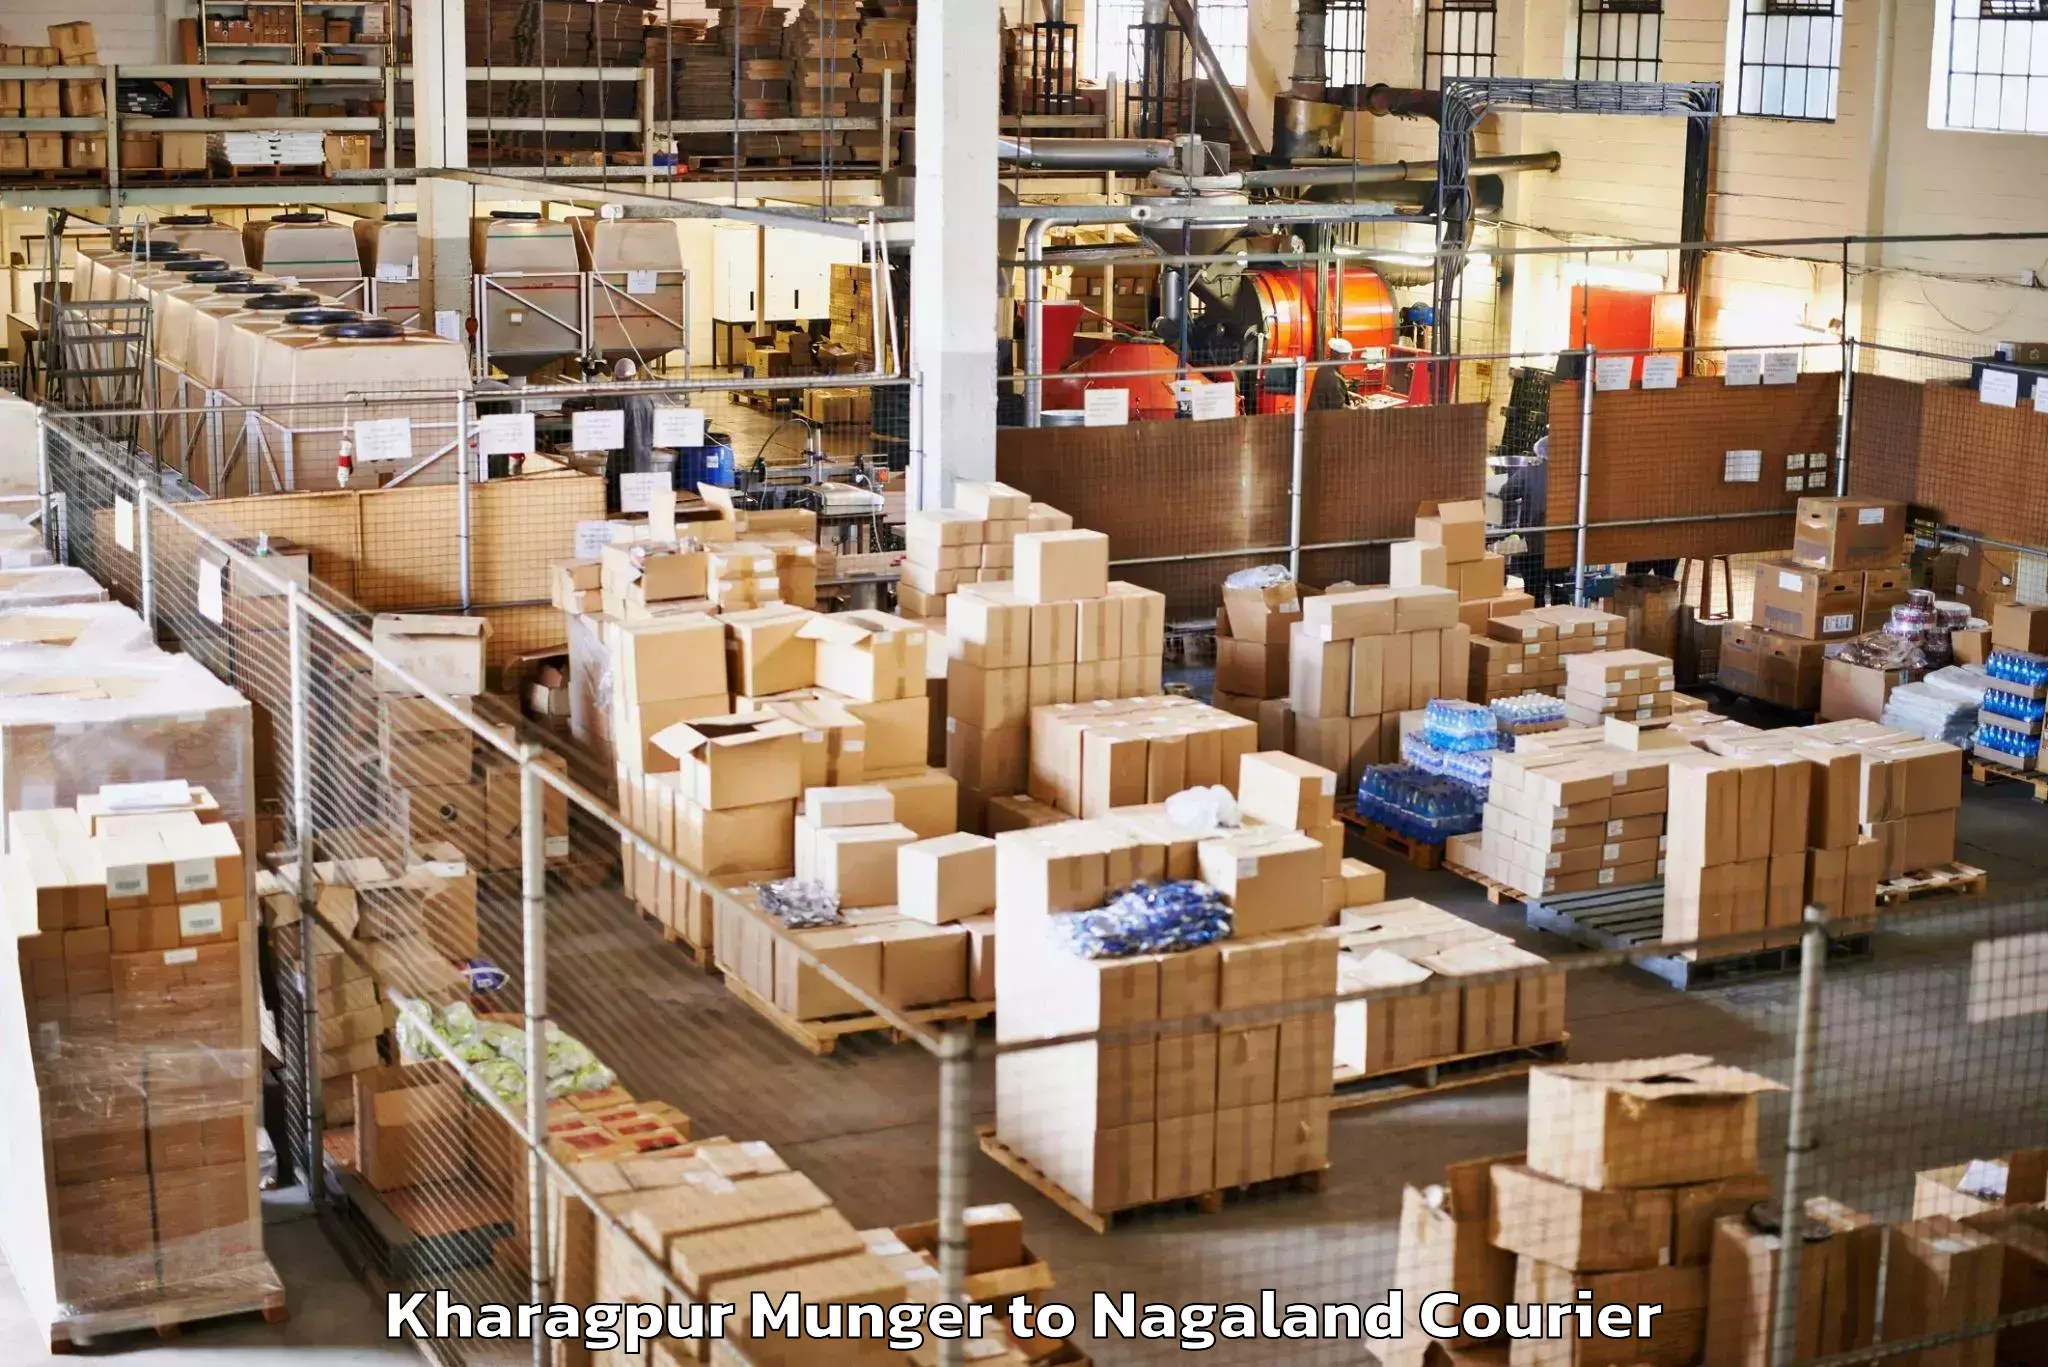 Baggage delivery optimization Kharagpur Munger to Nagaland